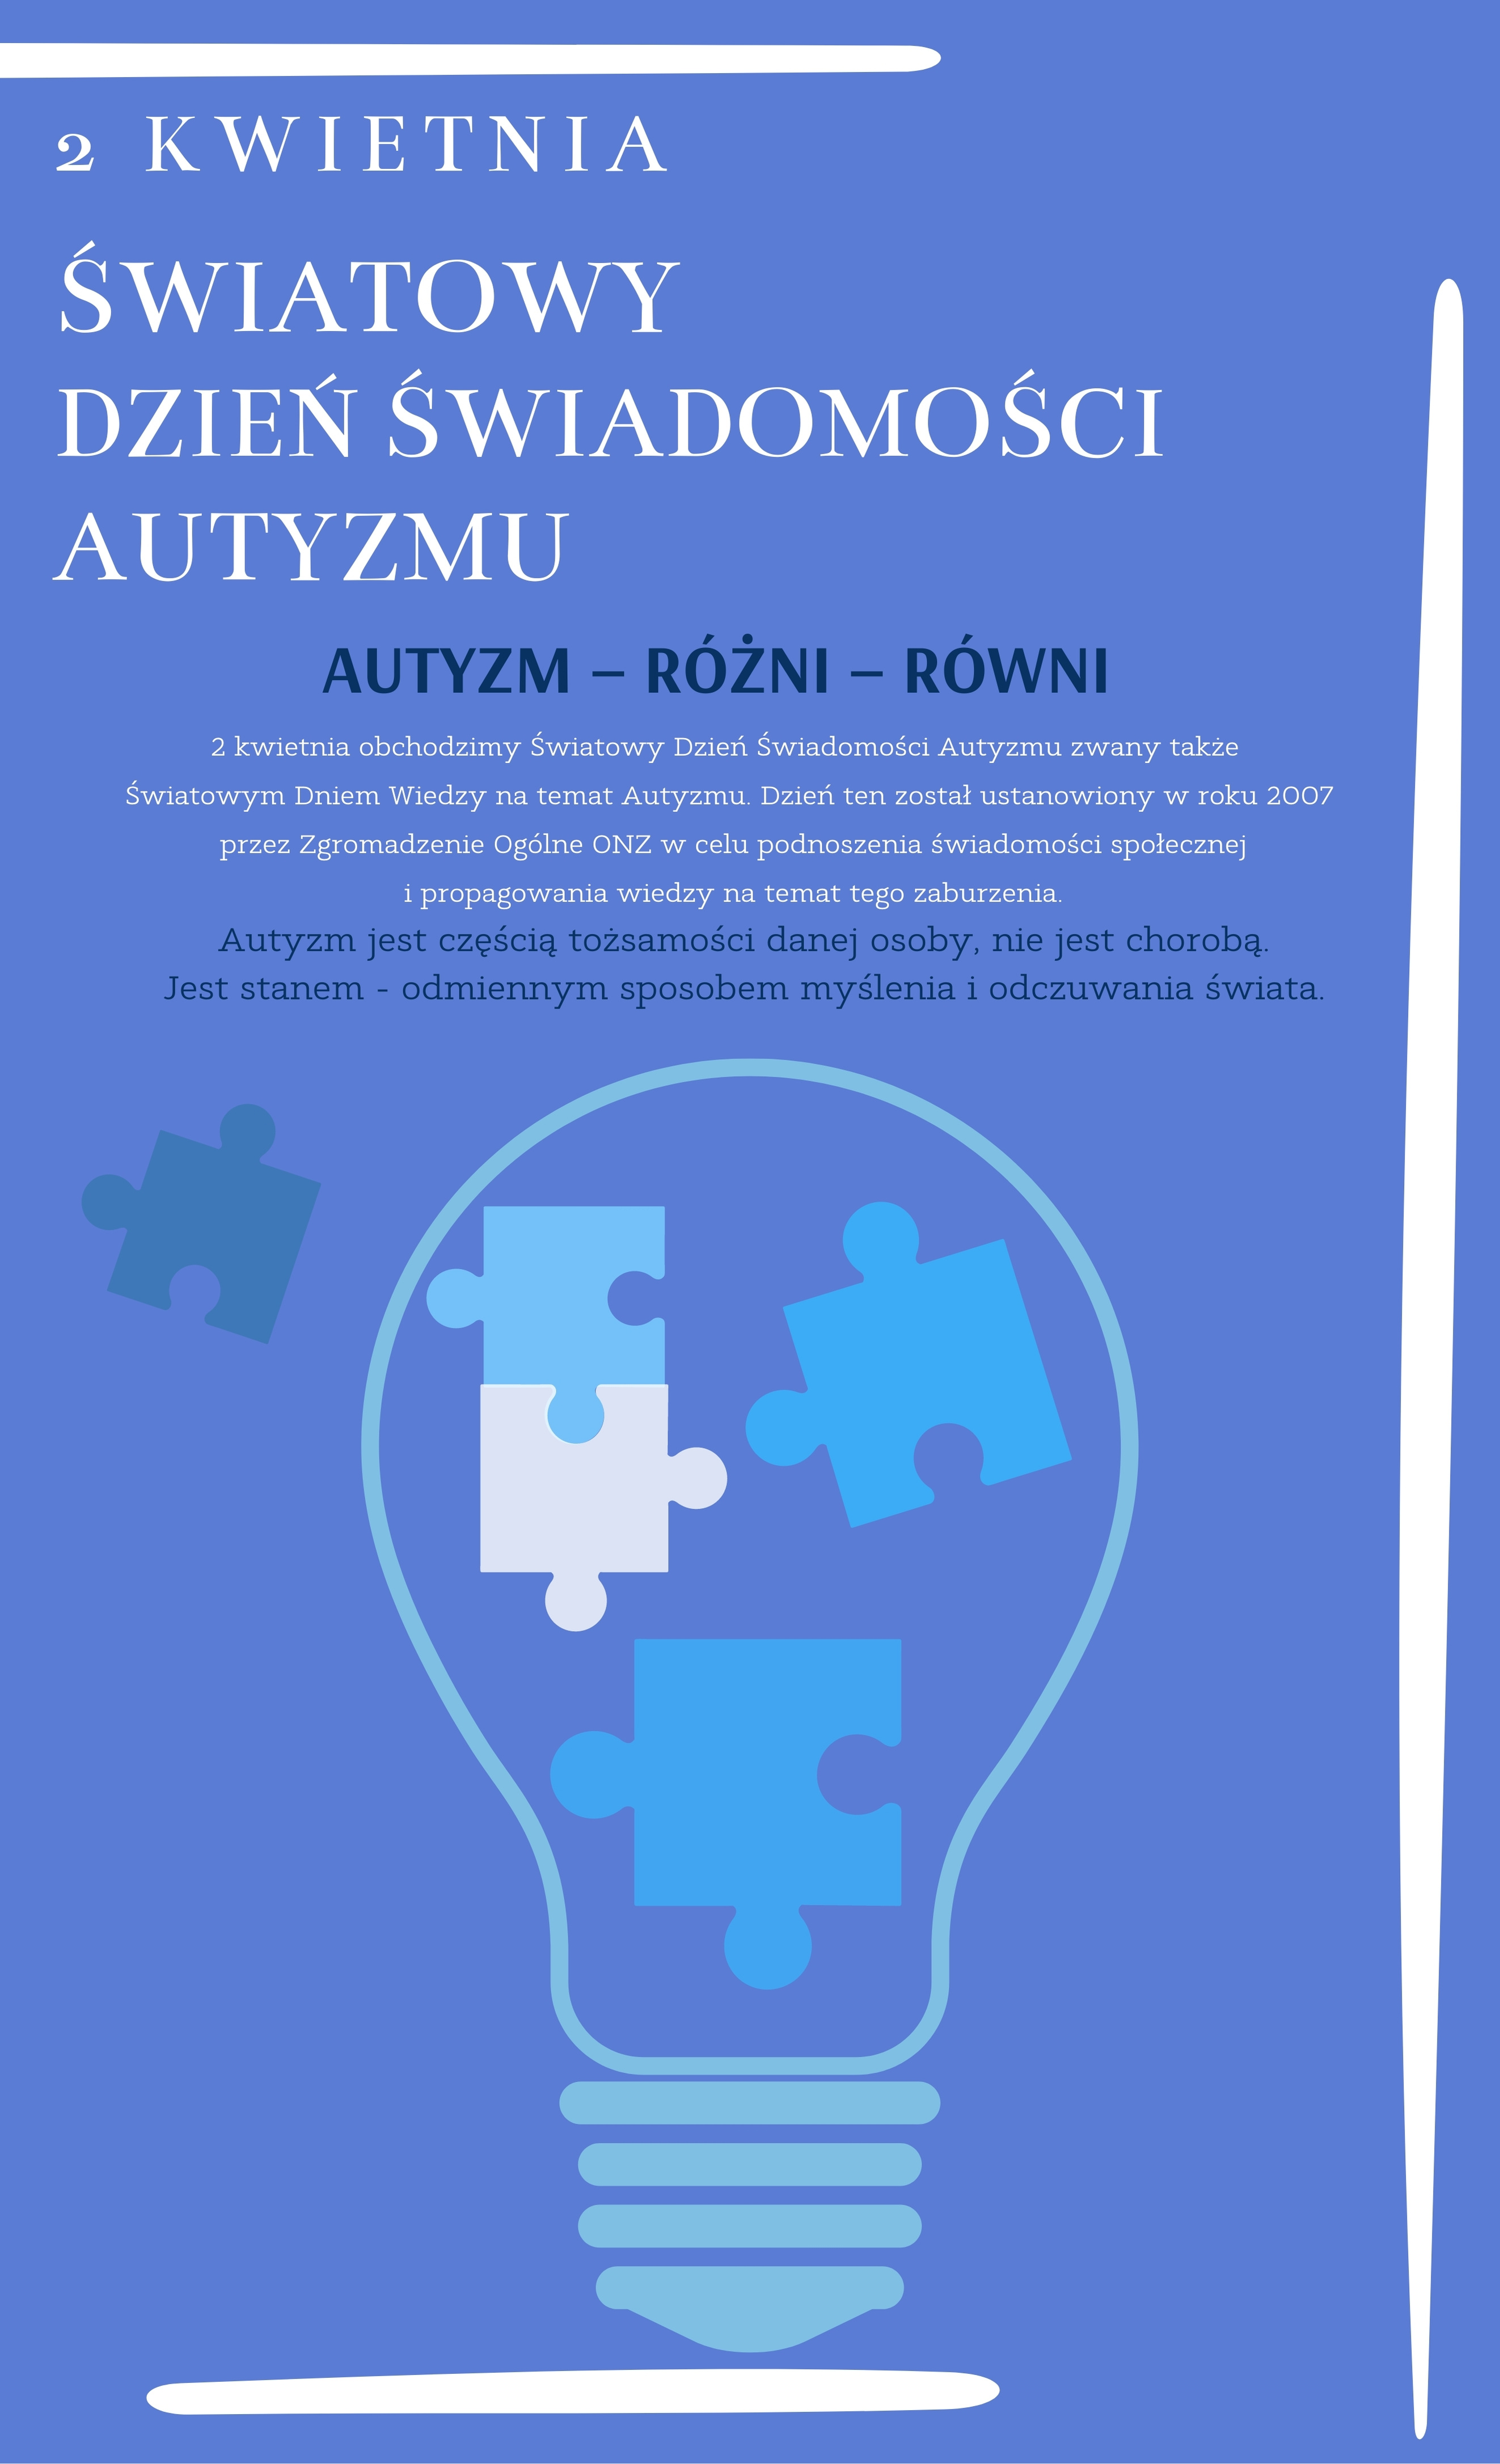 Plakat informacyjny na temat autyzmu